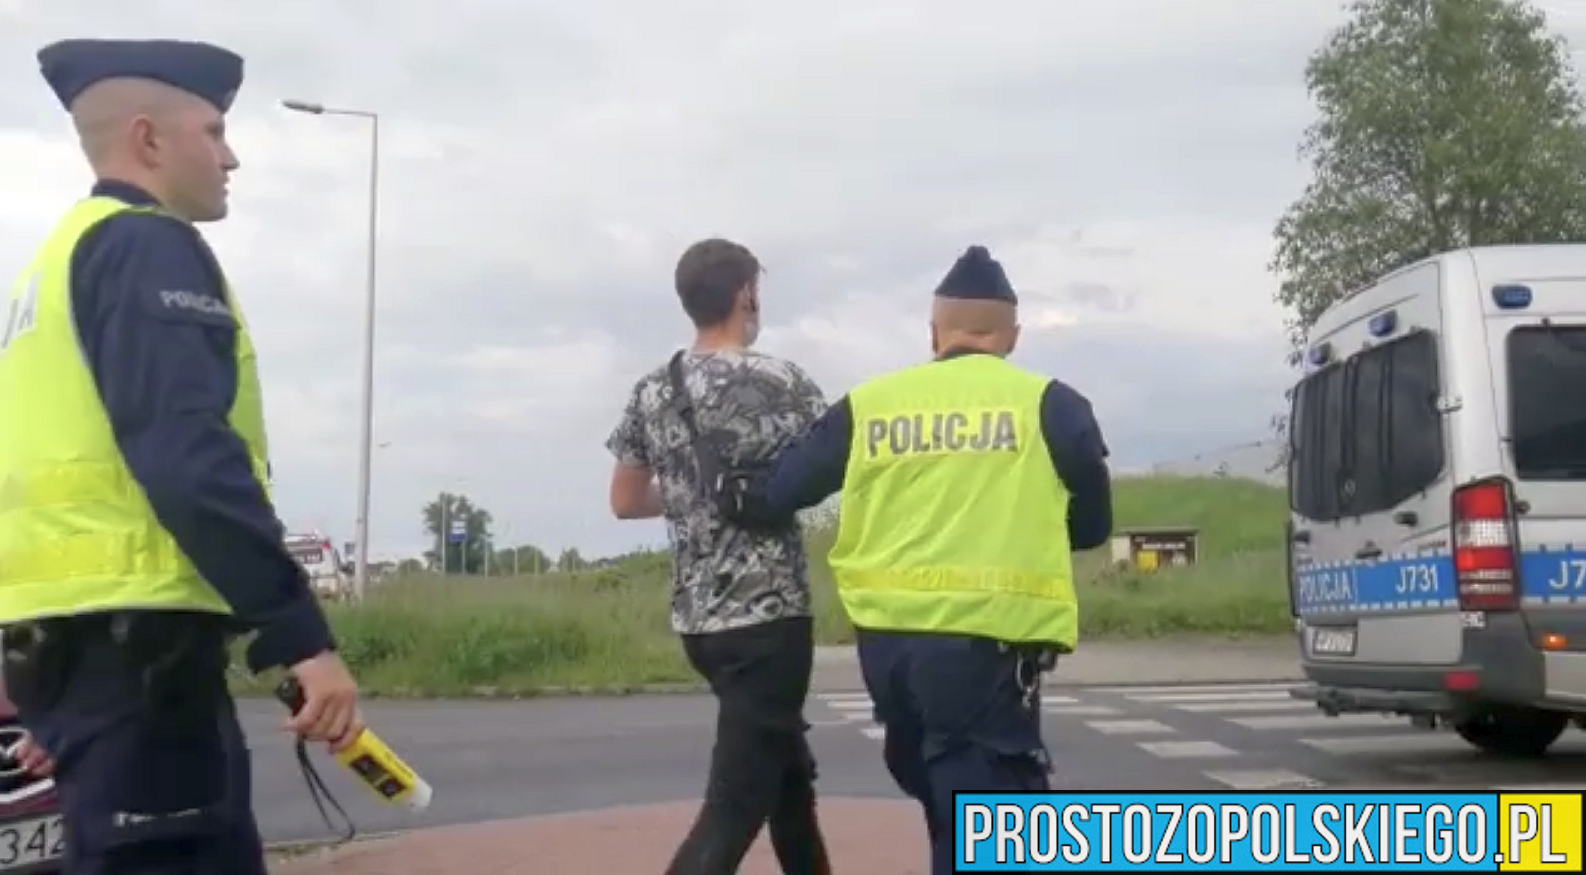 Pijany kierowca chciał "udzielić" pomocy medycznej i został zatrzymany.(Zdjęcia&Wideo)